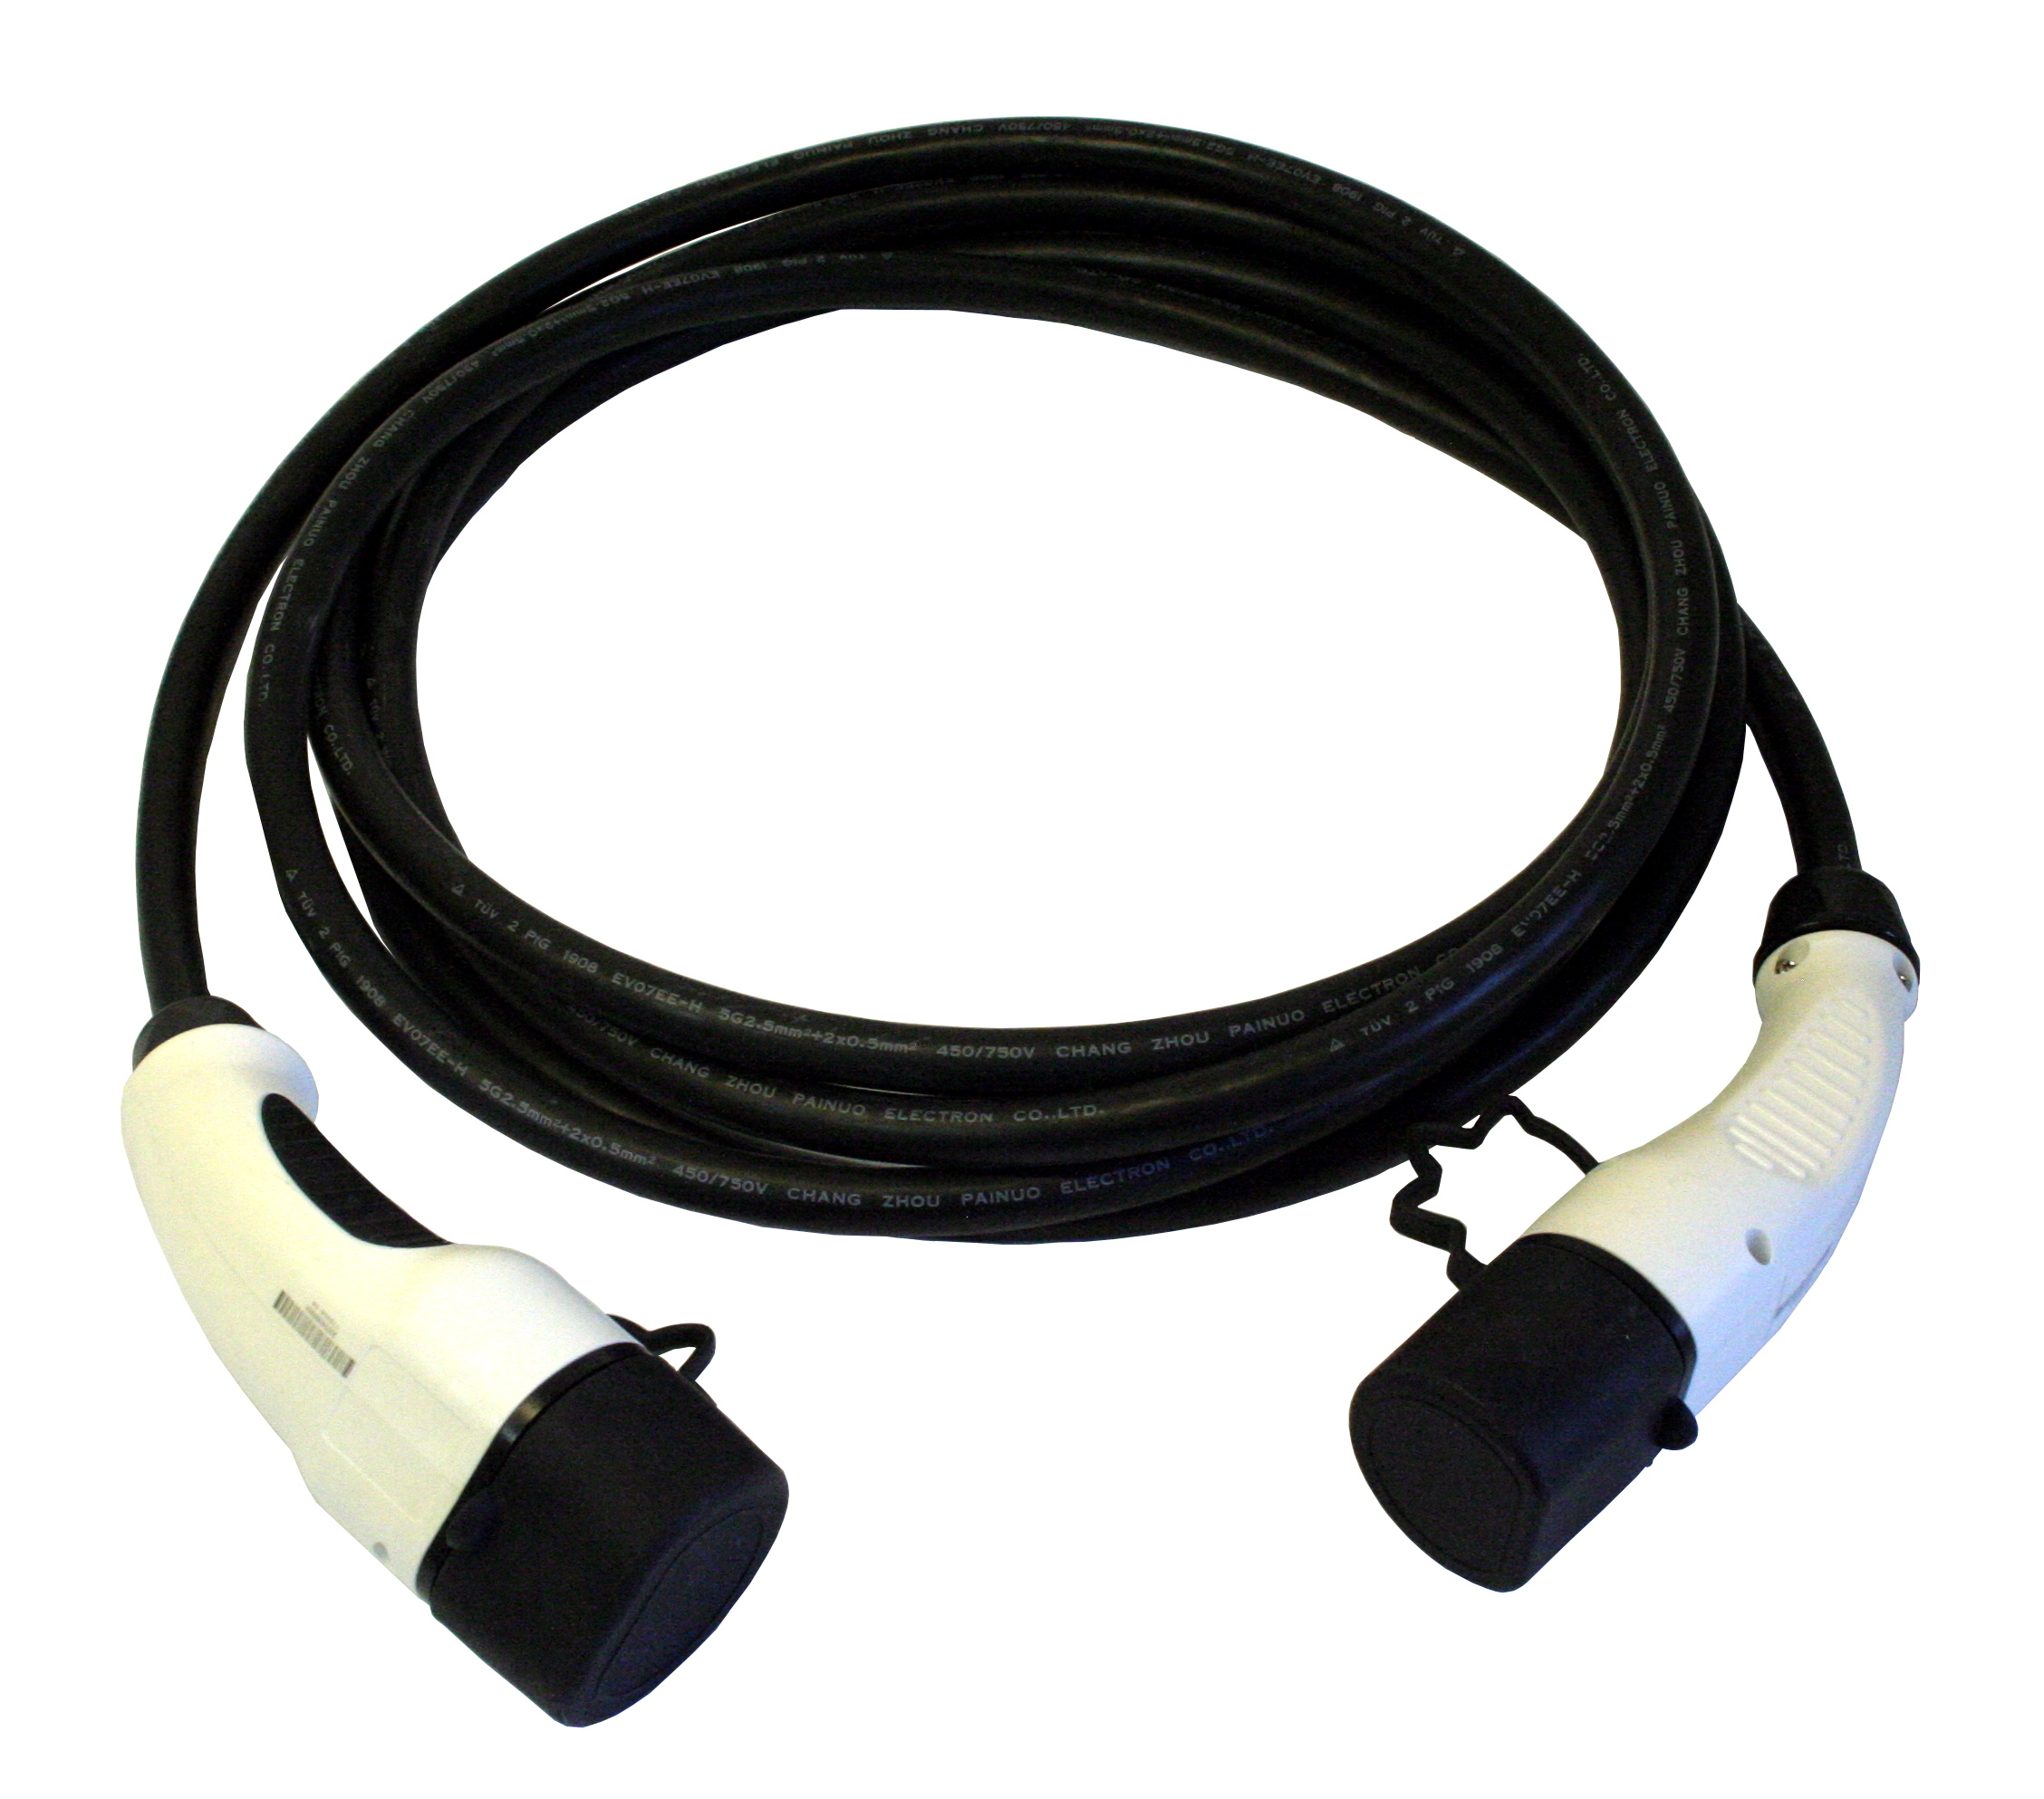 EV nabíjací kábel Typ 2 - Typ 2, 32A, 3-fázový, 10m